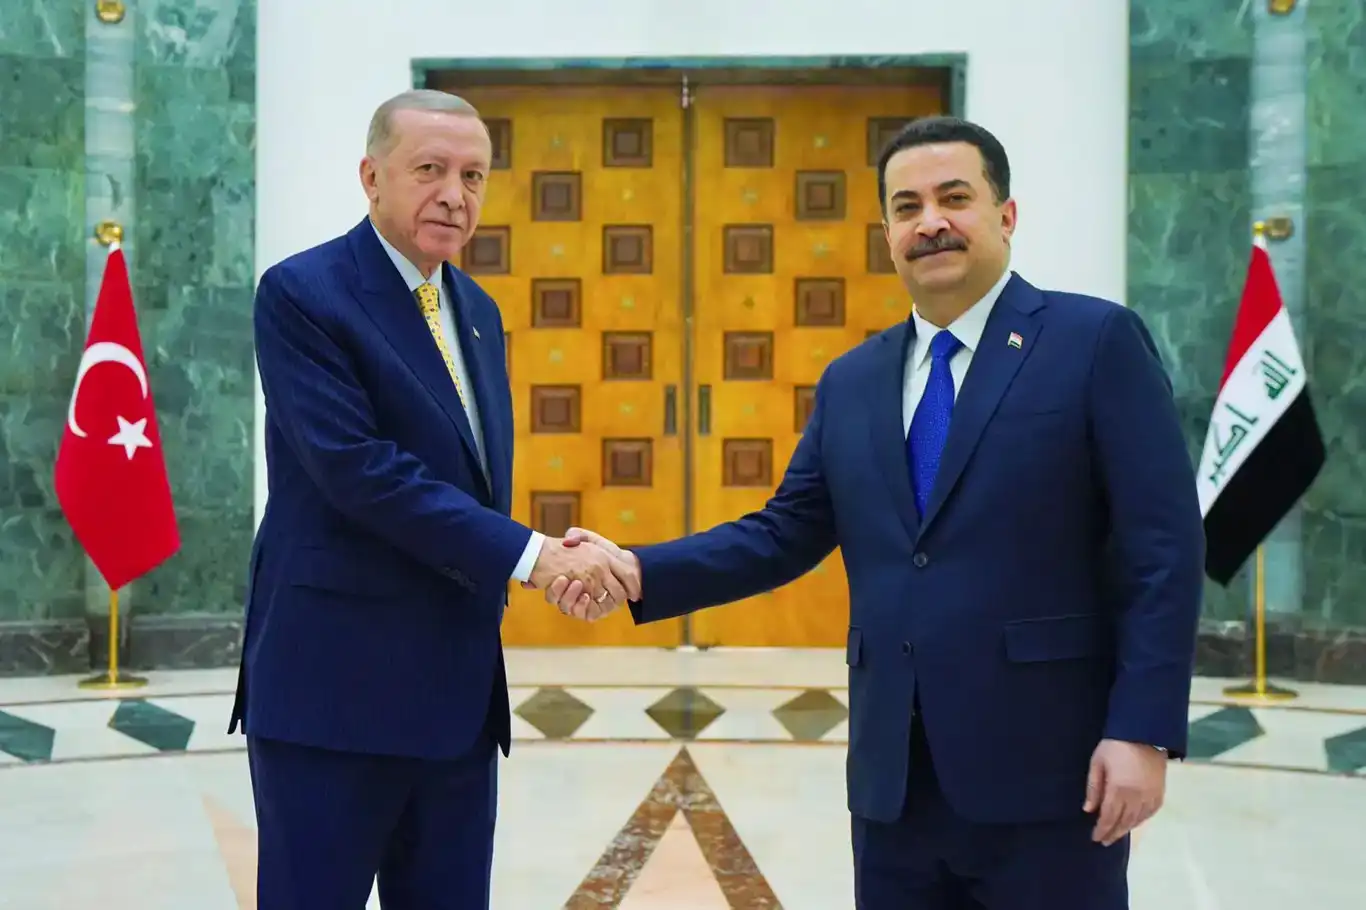  أردوغان : الاتفاقيات التي وقعناها في العراق ستشكل نقطة تحول جديدة في العلاقات التركية العراقية